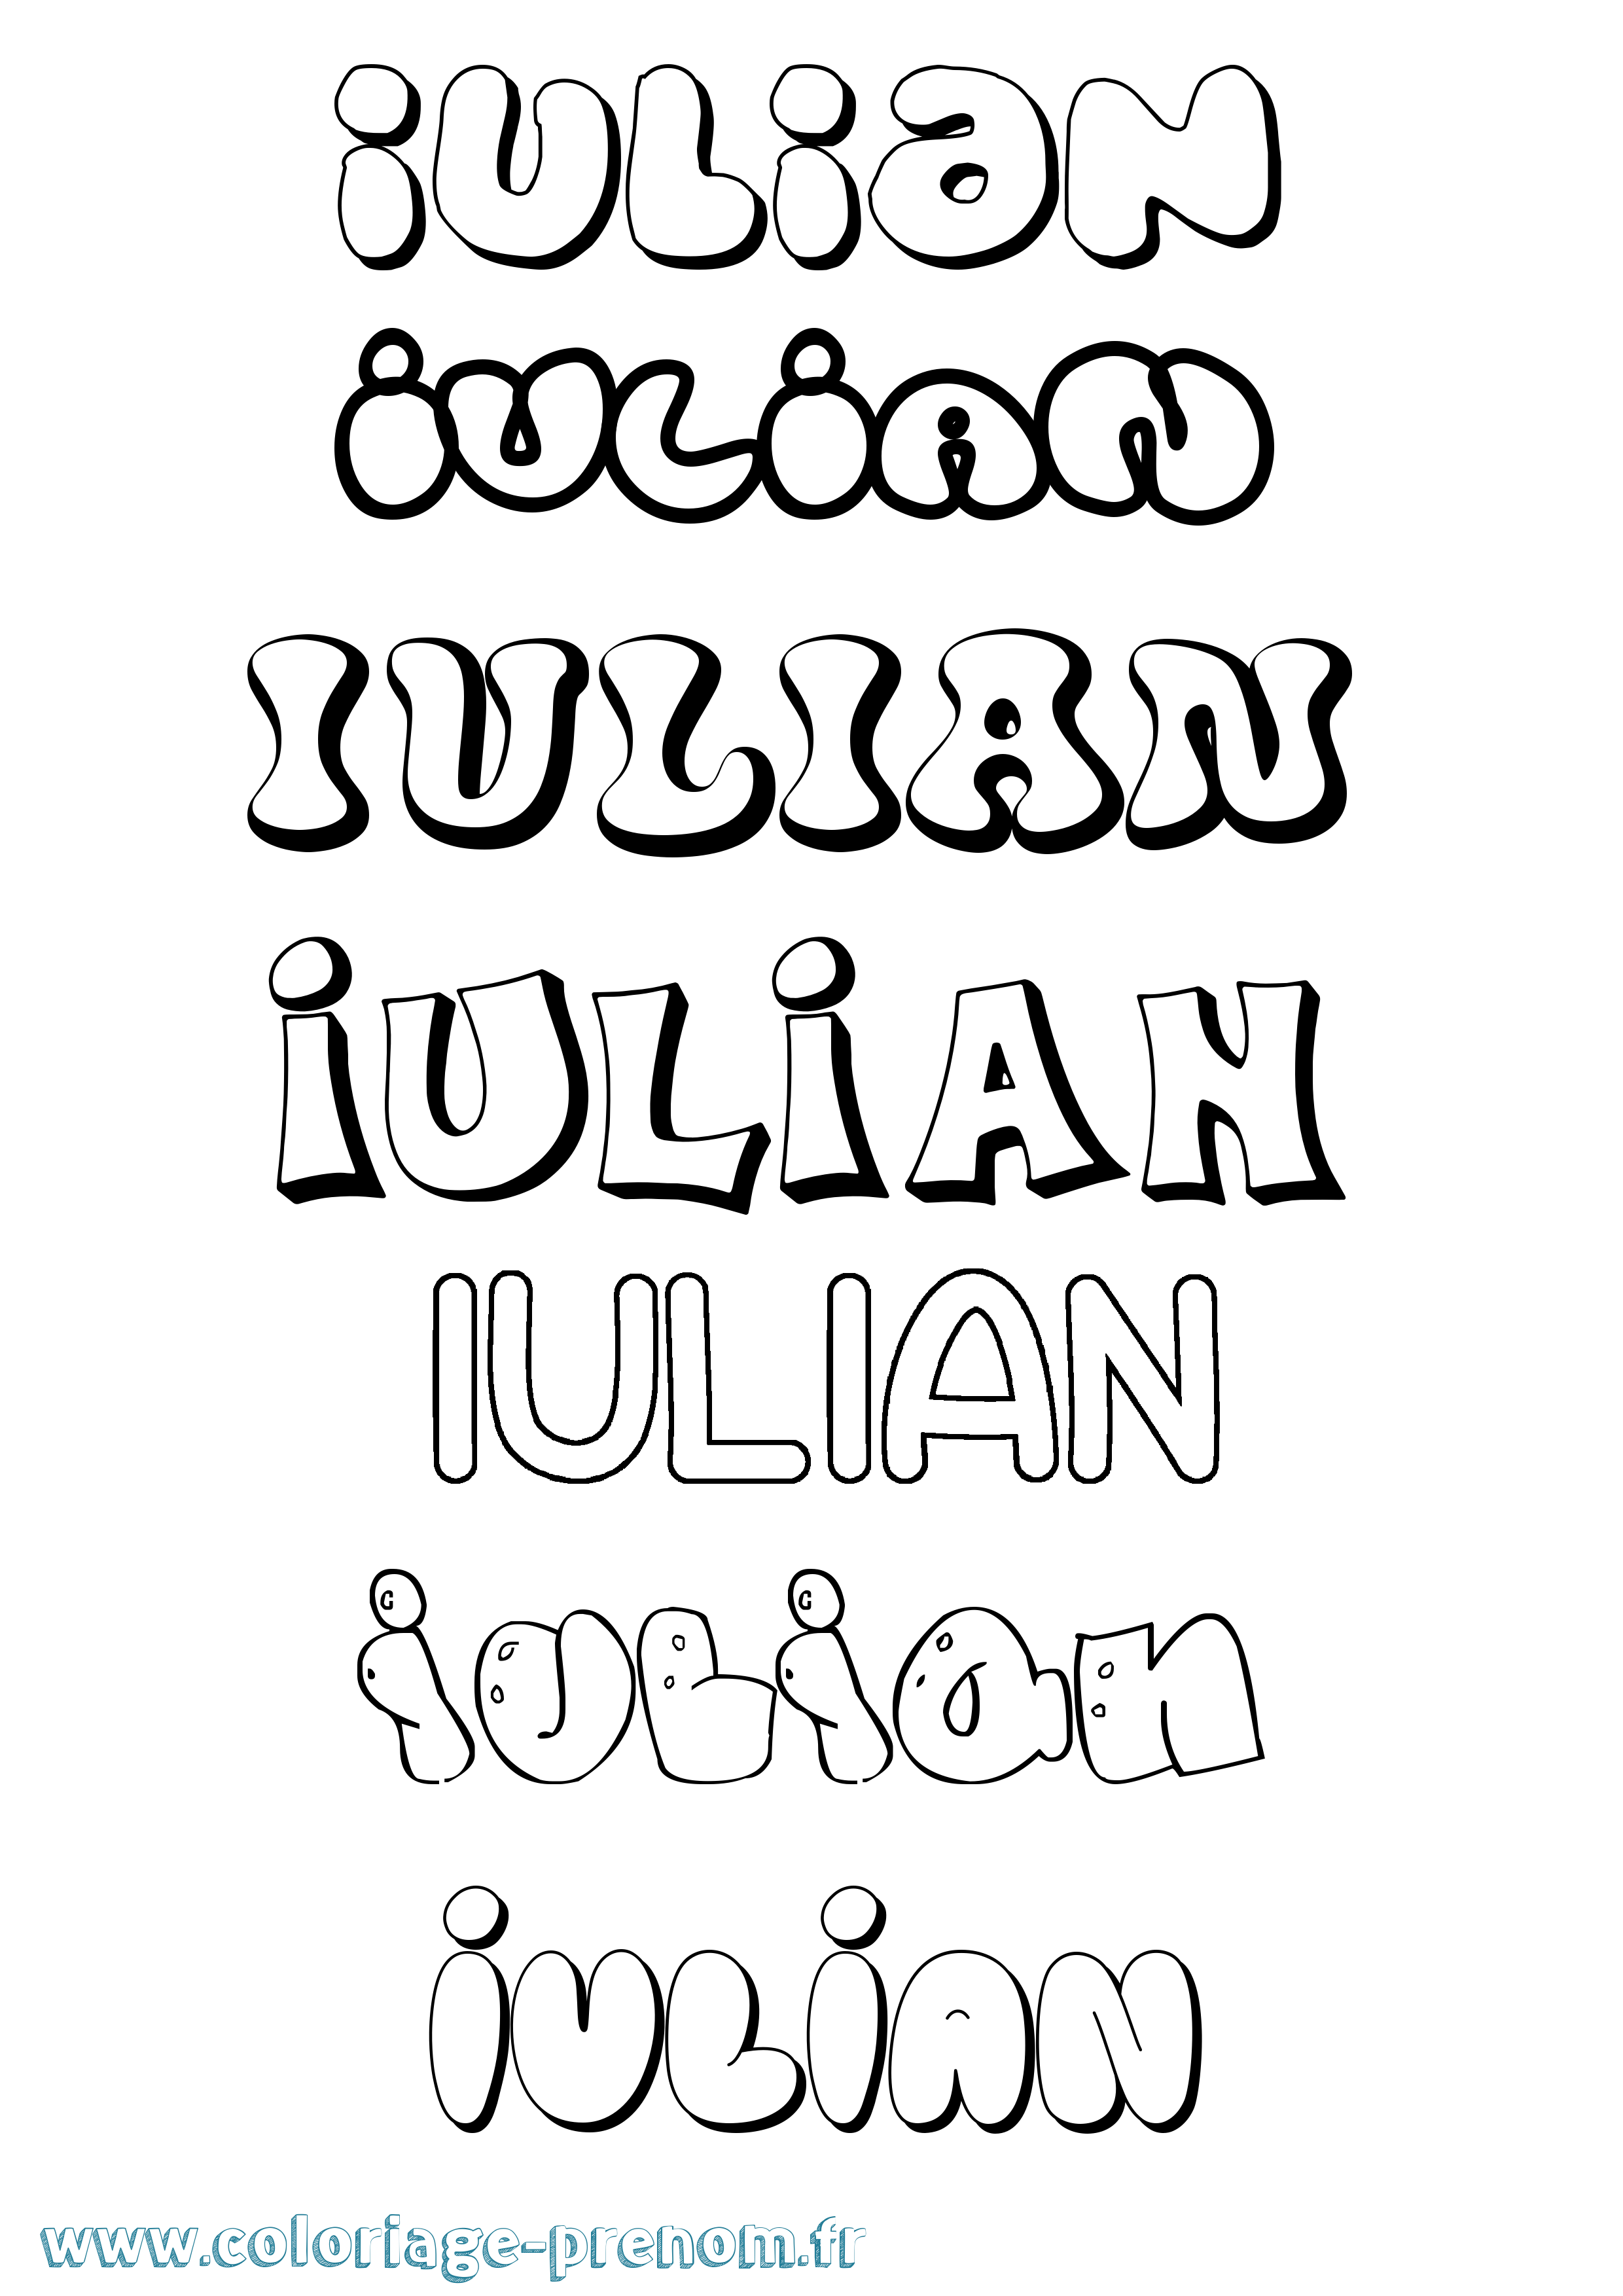 Coloriage prénom Iulian Bubble